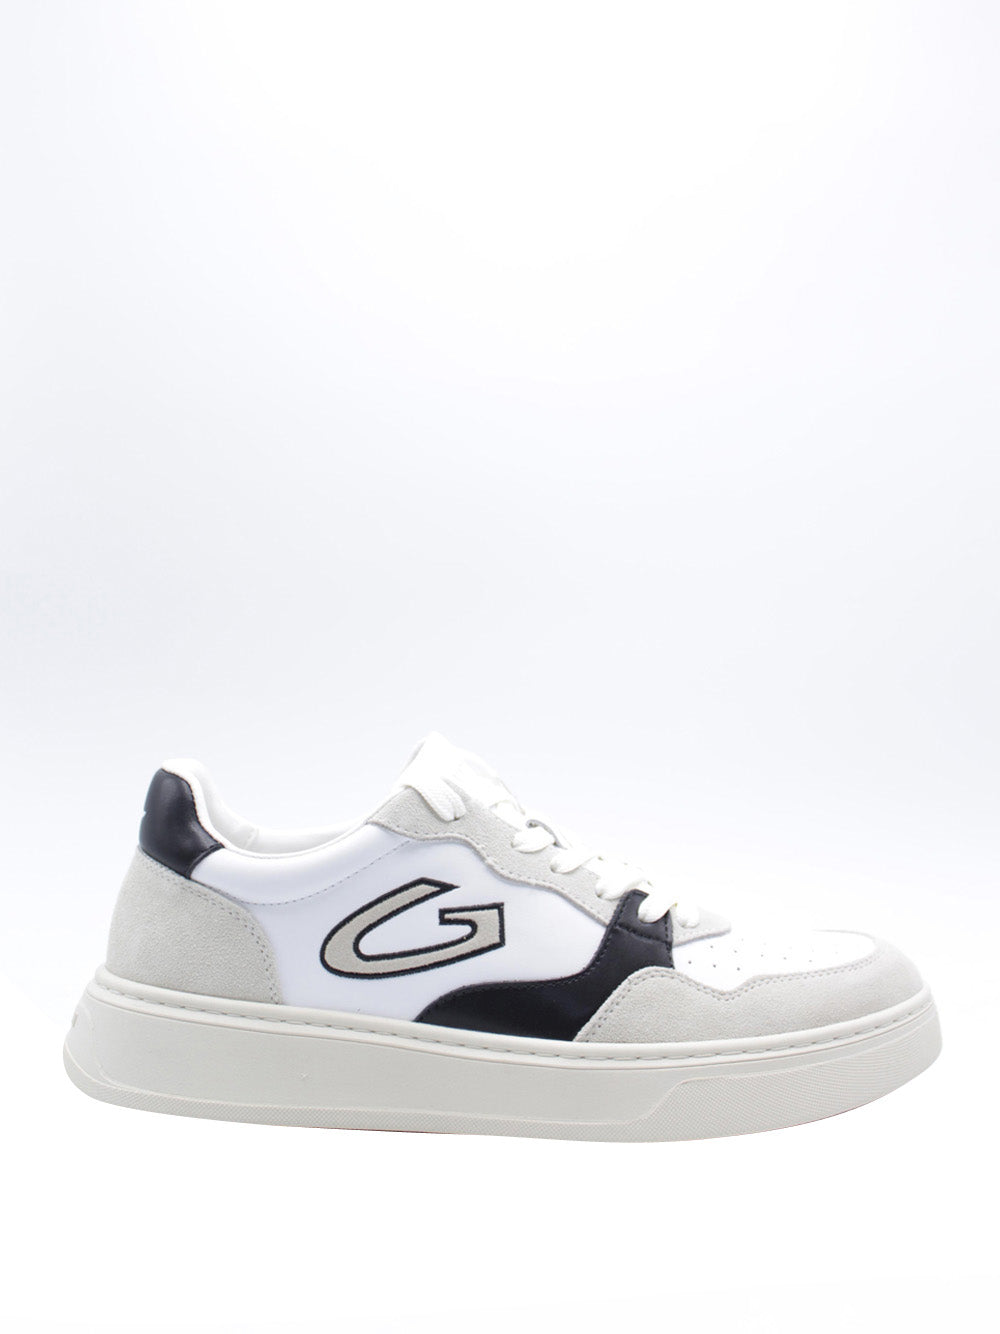 GUARDIANI Sneakers Uomo - Bianco modello AGM316000